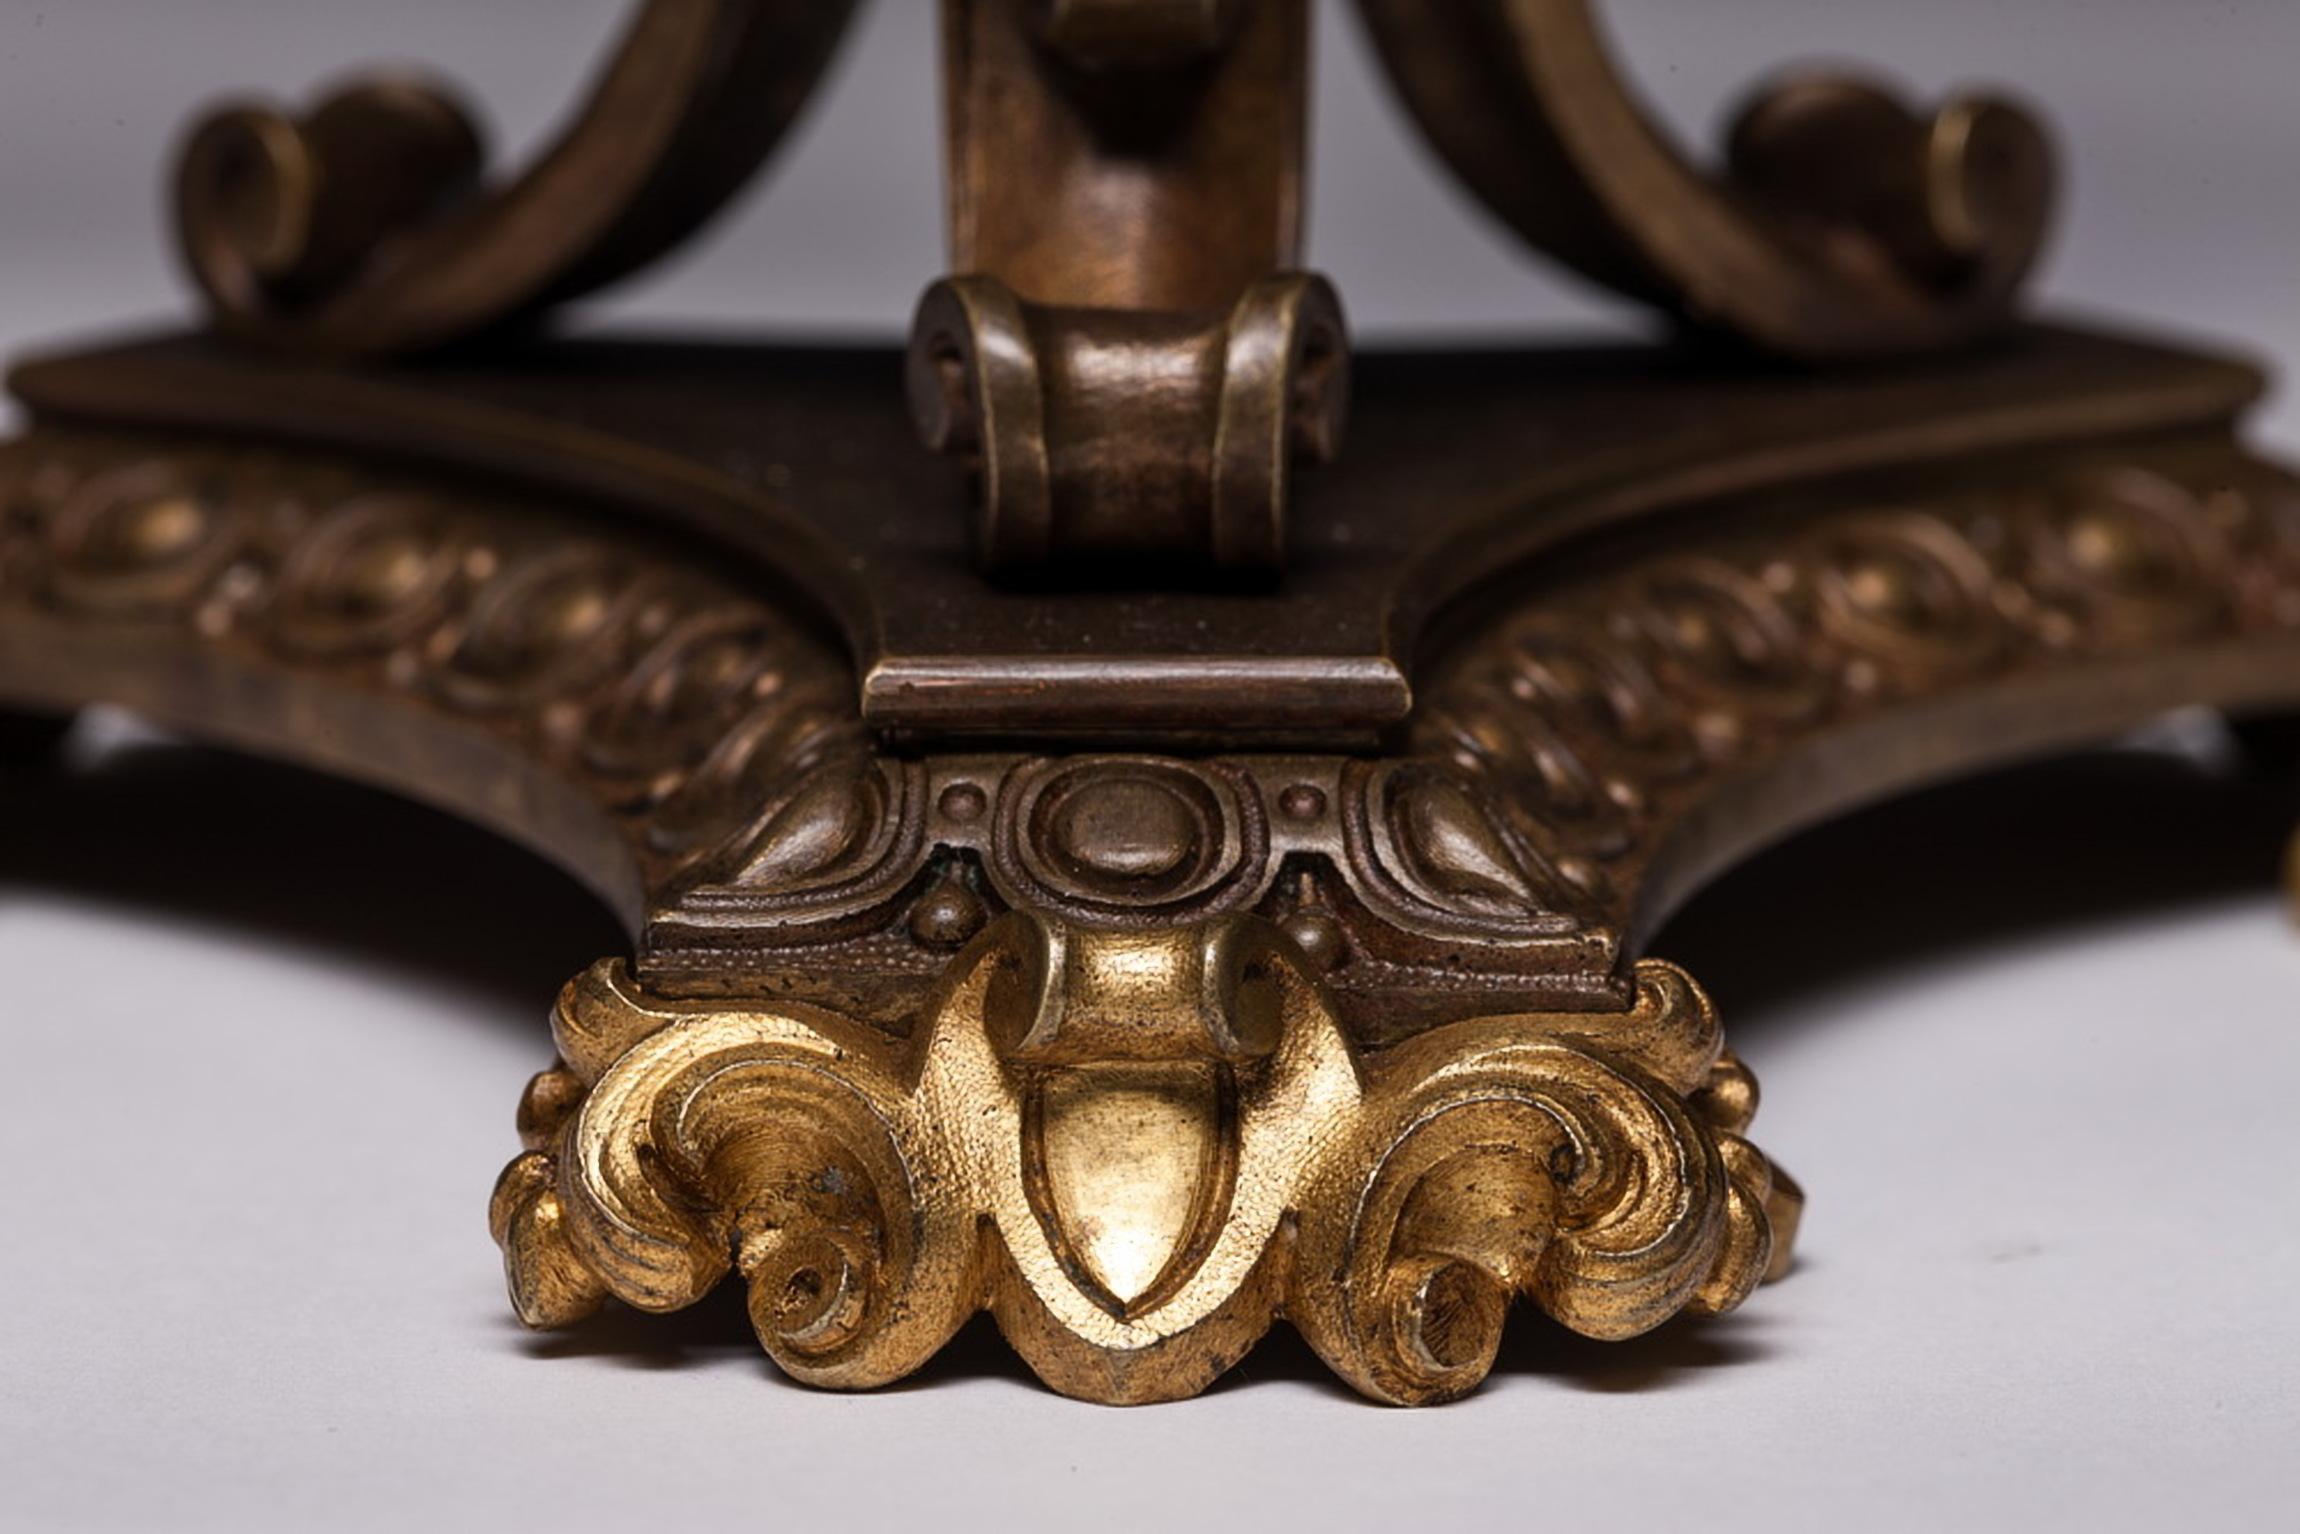 19th Century French Empire Gilt Doré Bronze Empire Candelabras a Pair For Sale 1